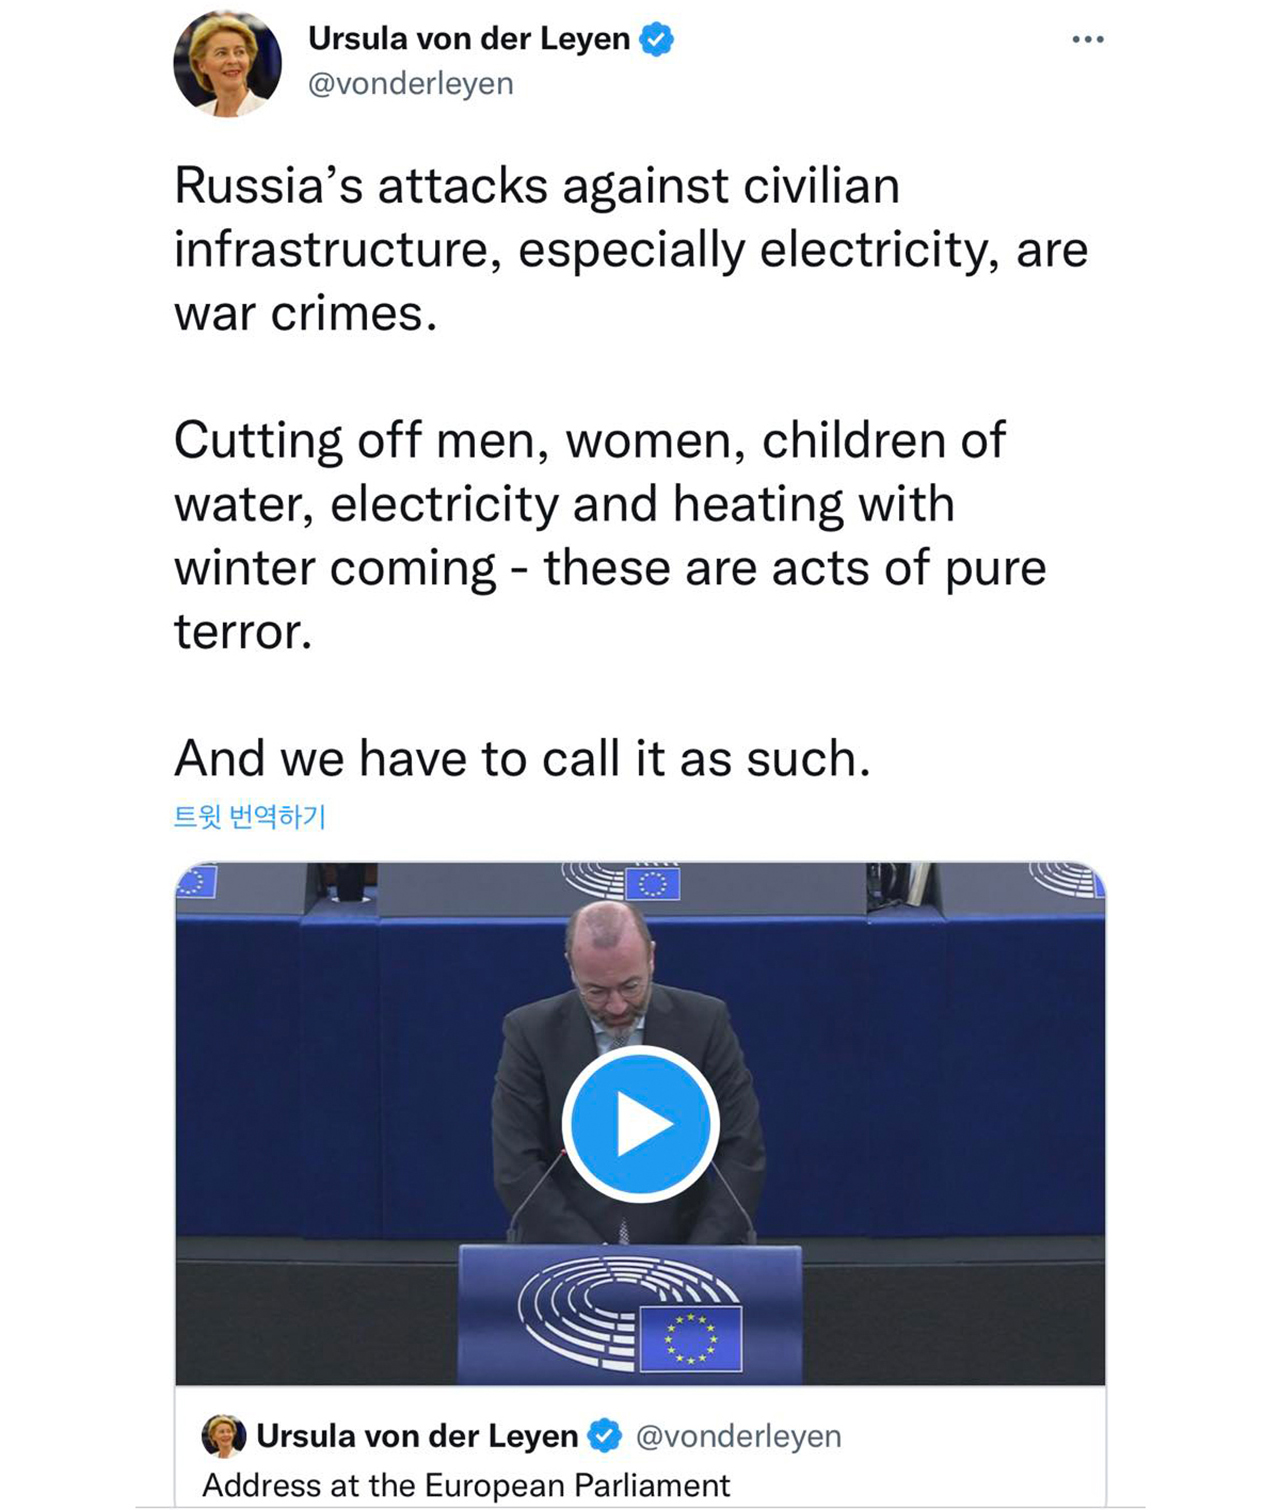 그림 3. 러시아의 우크라이나 송전망 타격을 규탄하는 연설을 중계한 우르줄라 폰 데어 라이엔 EU 의장 트위터 캡처.